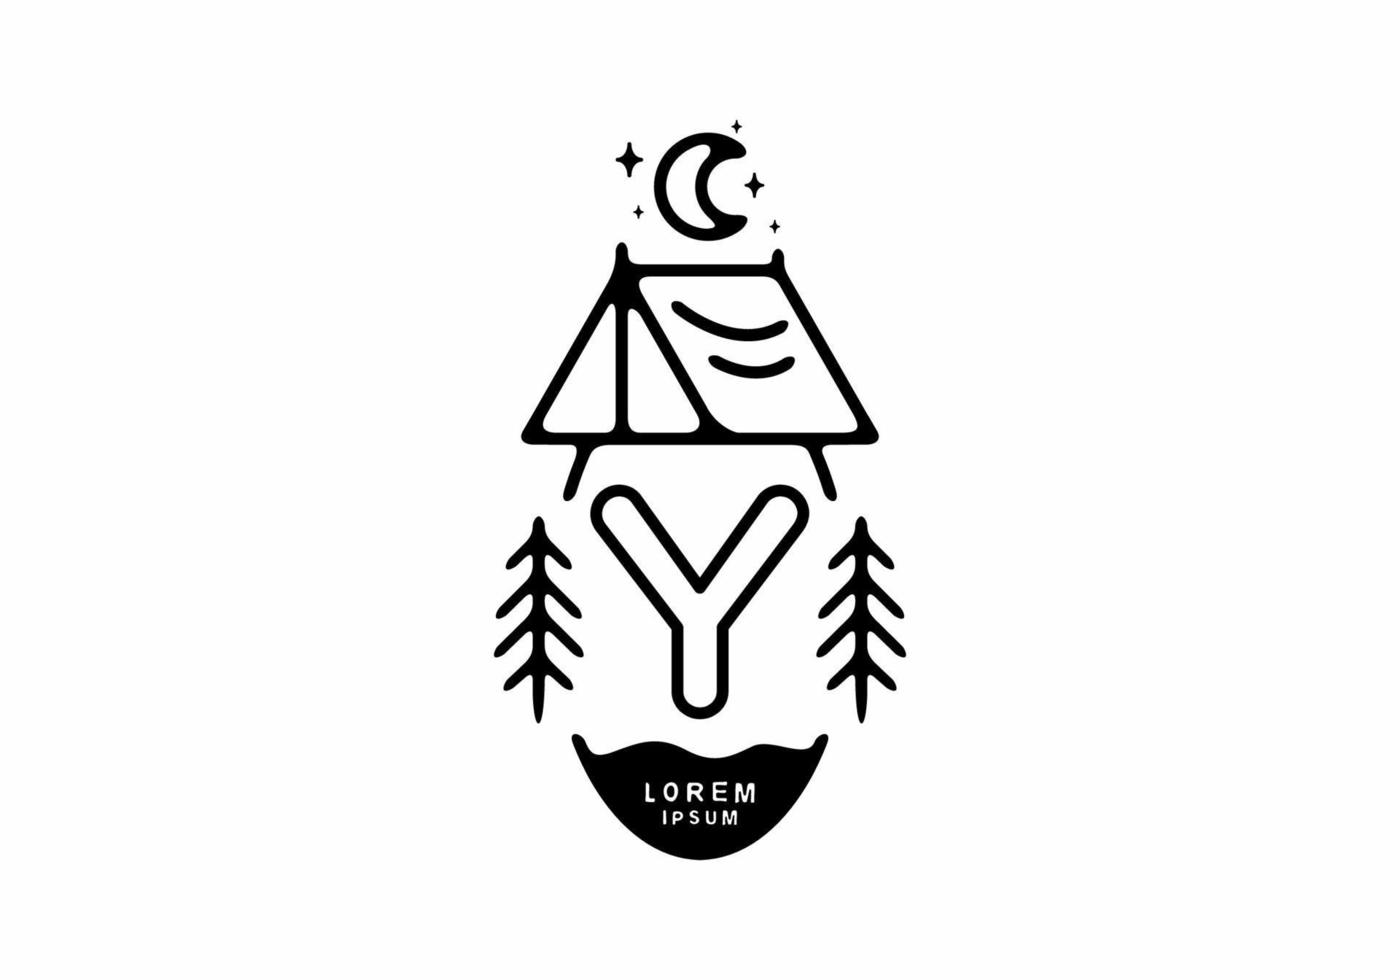 zwarte lijn kunst illustratie van camping tent badge met y letter vector